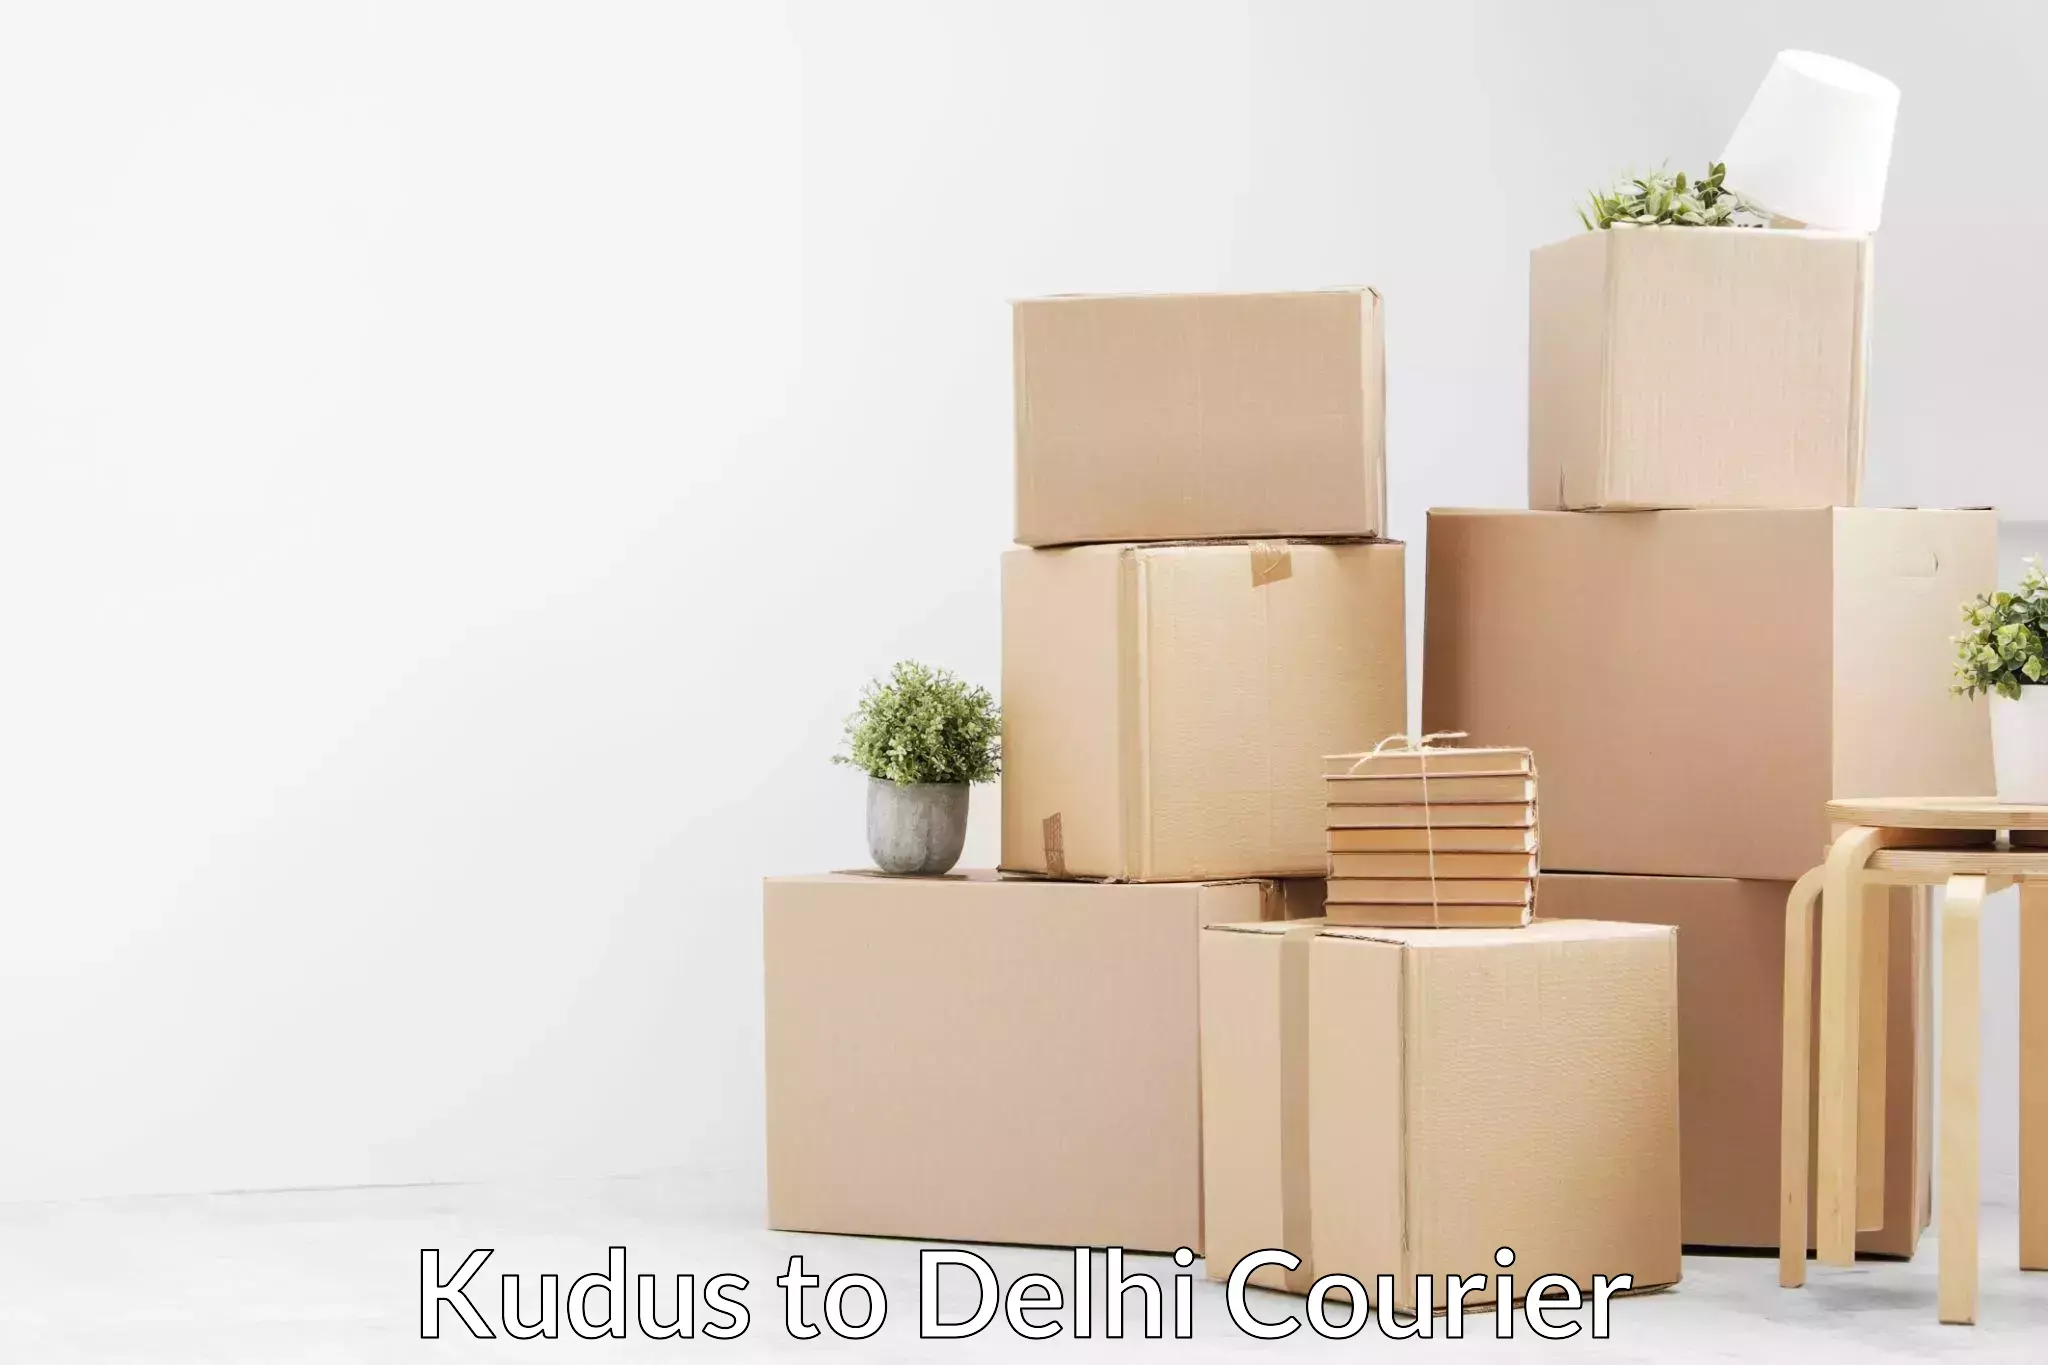 Furniture delivery service Kudus to Delhi